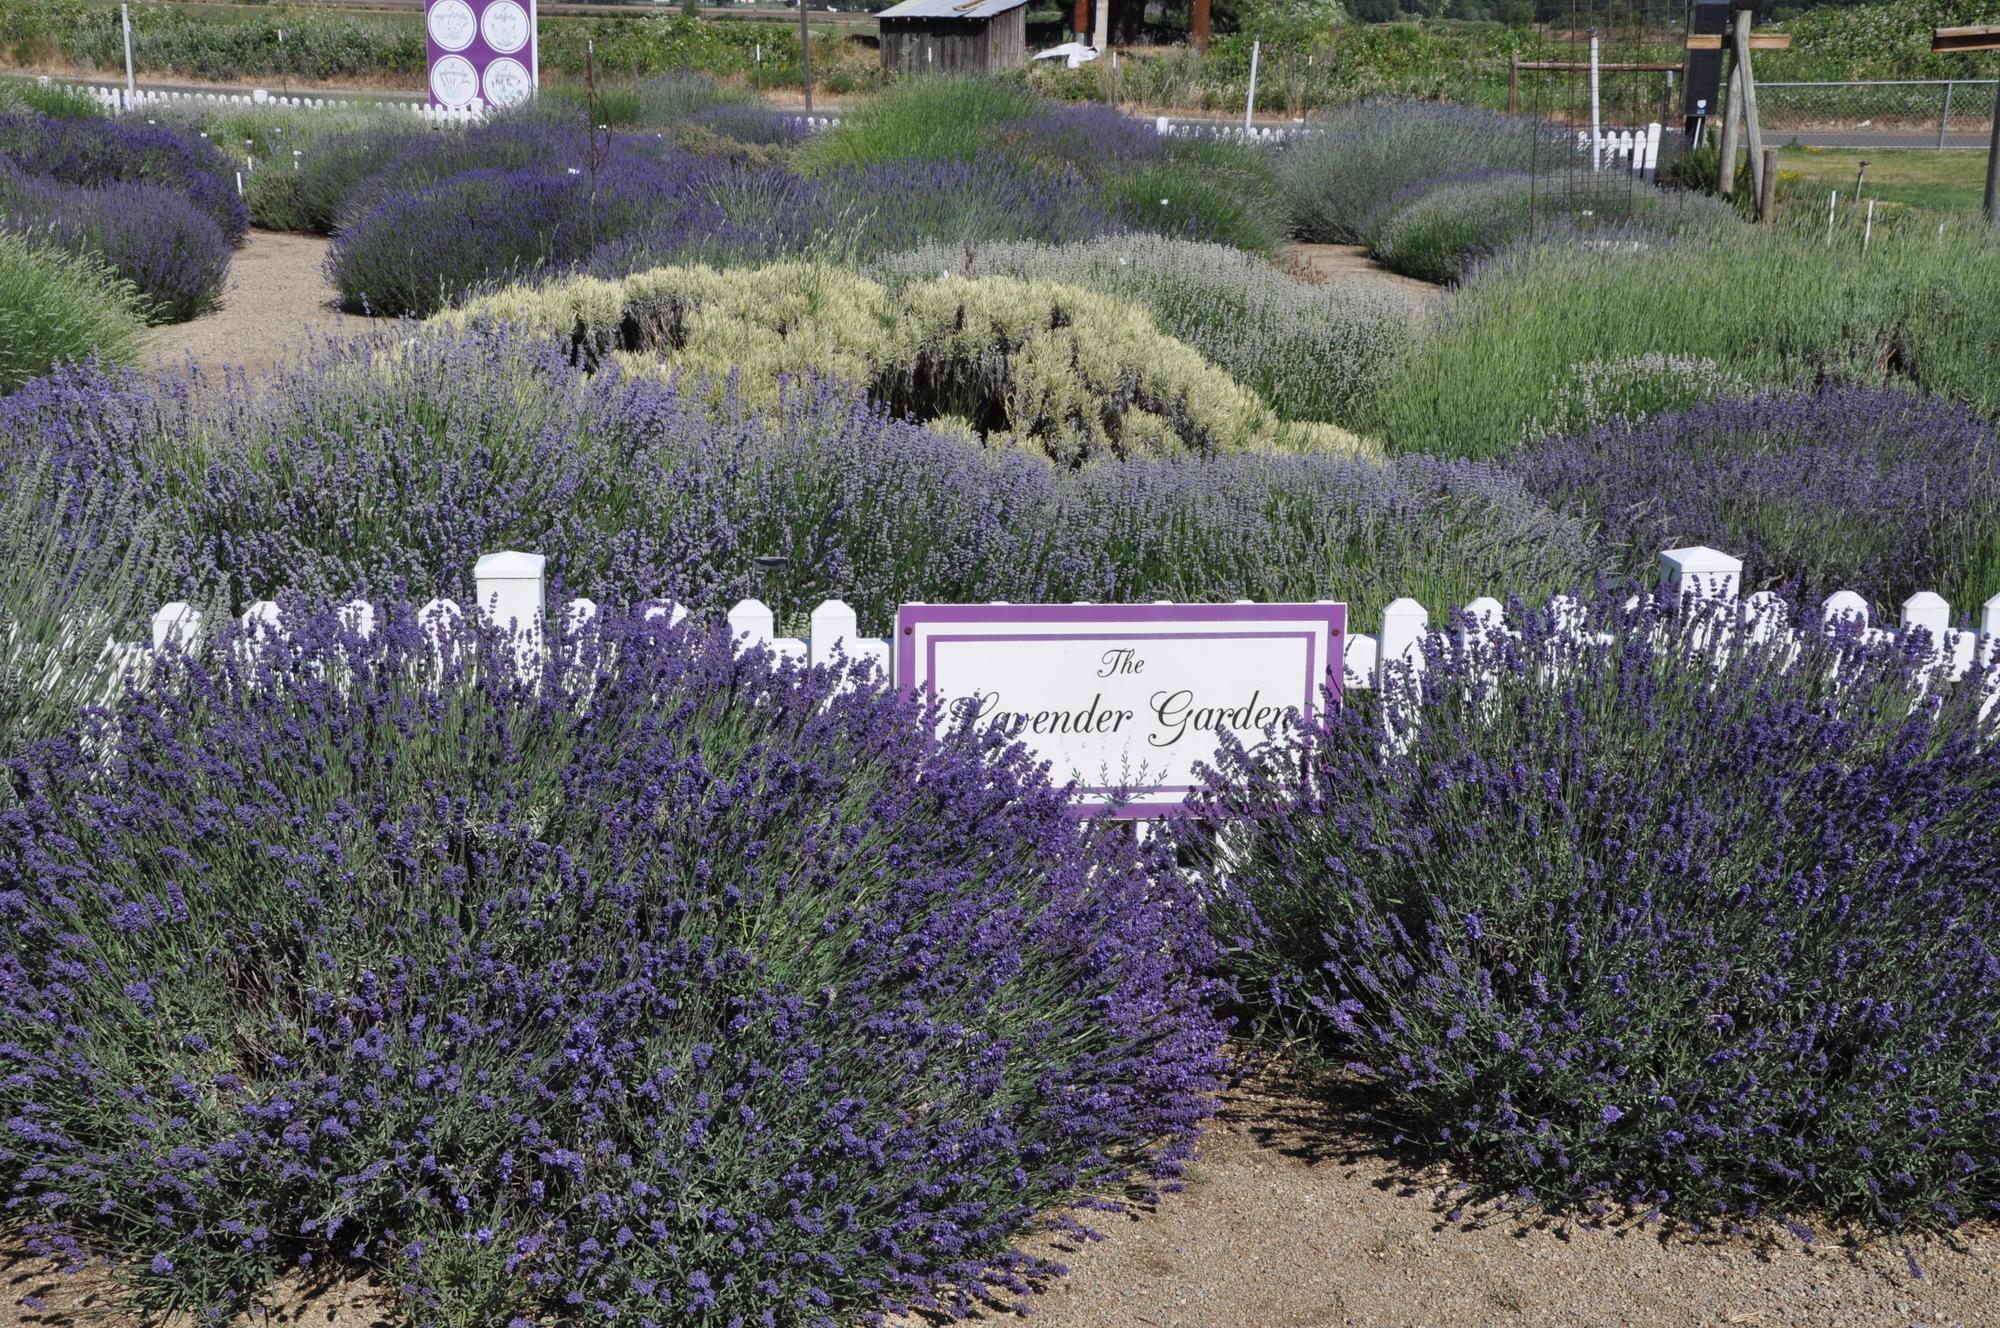 large lavender bushes in bloom